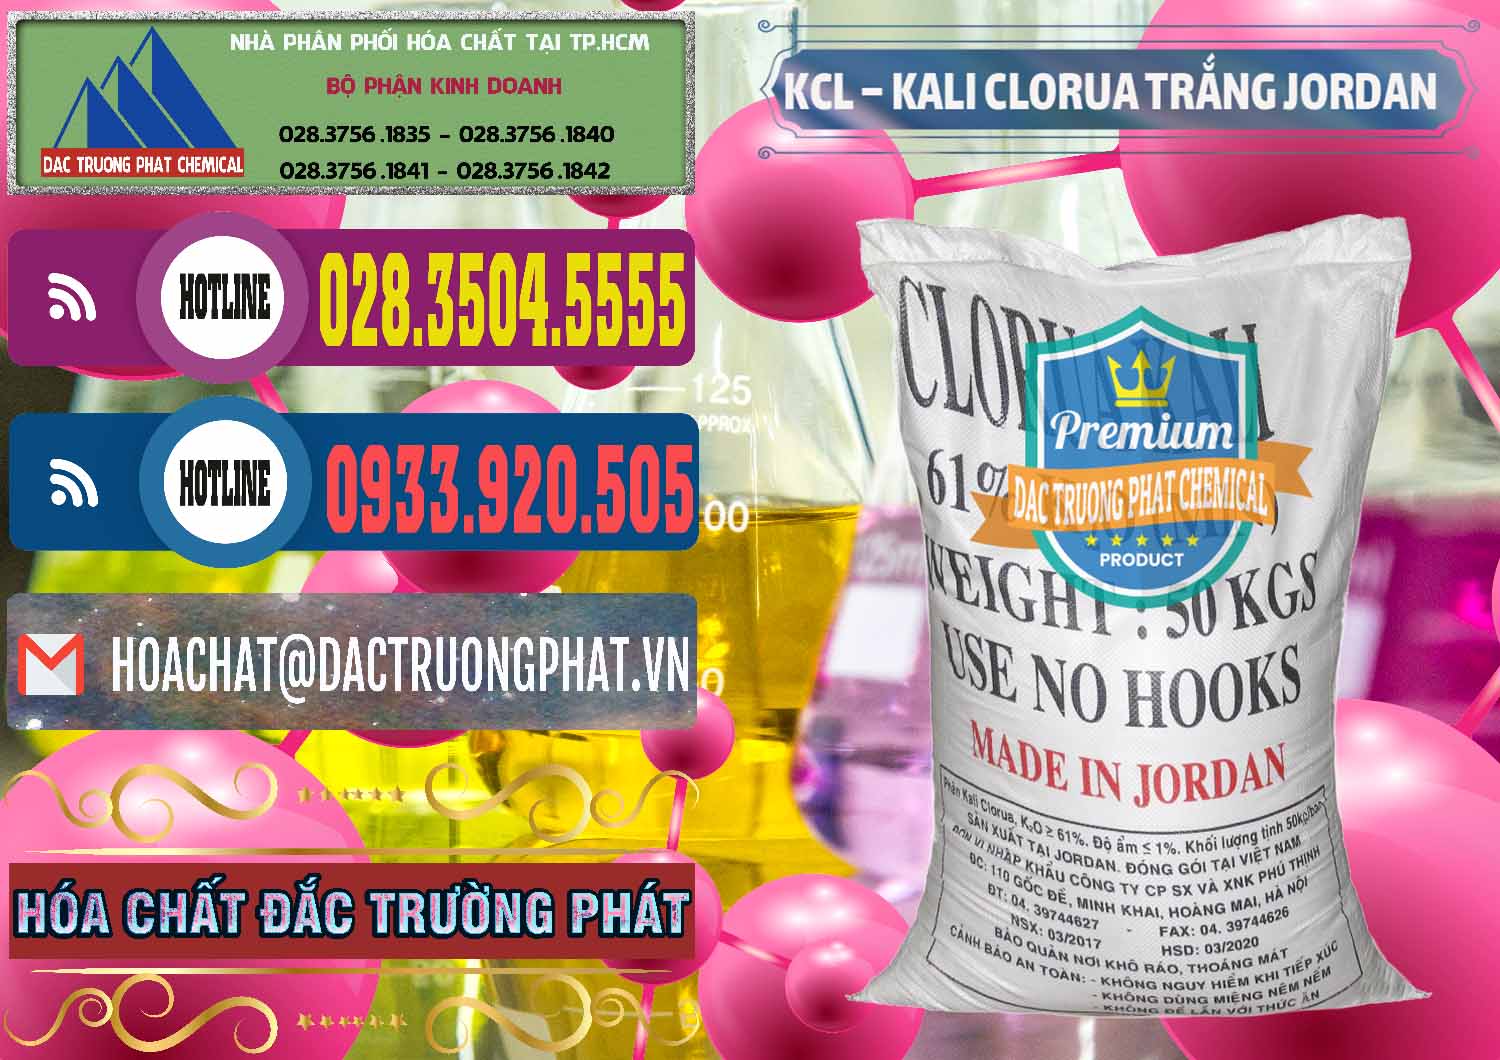 Cty bán & cung ứng KCL – Kali Clorua Trắng Jordan - 0088 - Đơn vị nhập khẩu & phân phối hóa chất tại TP.HCM - muabanhoachat.com.vn